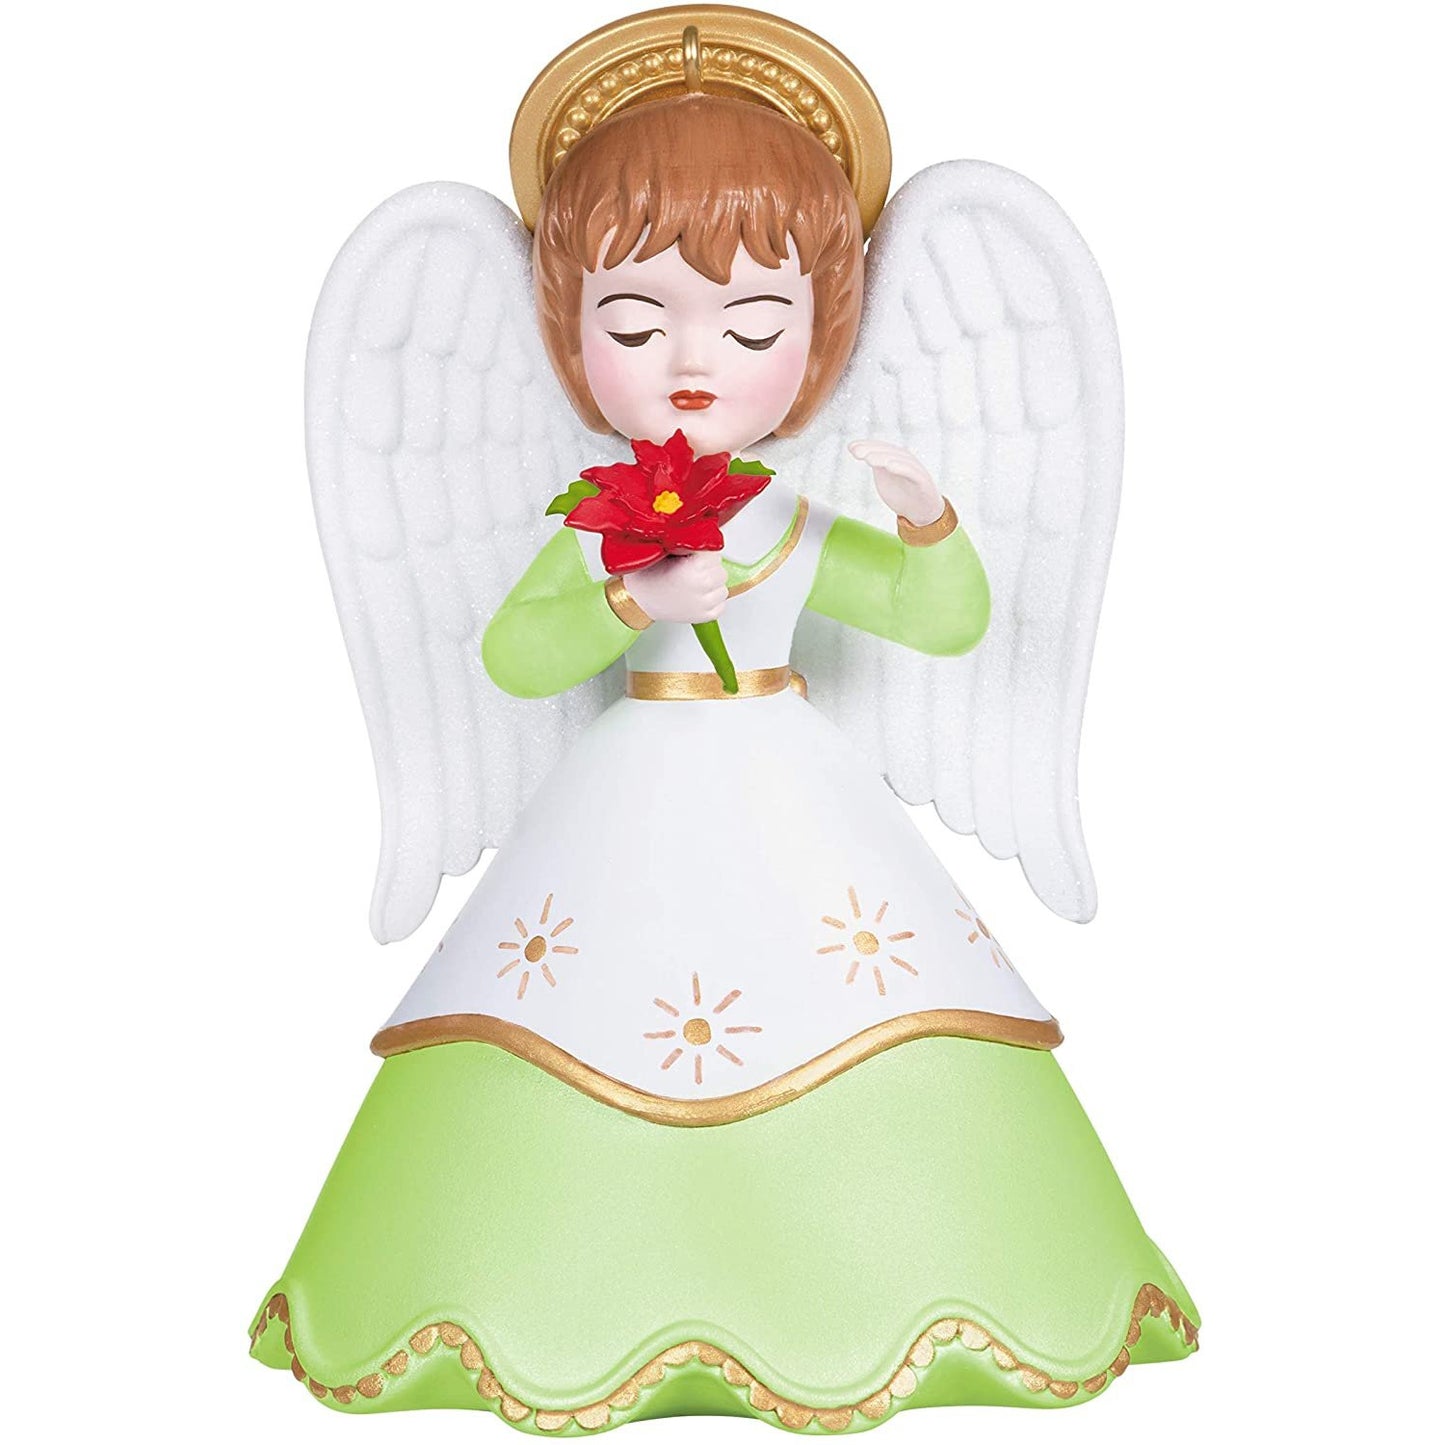 Hallmark Keepsake Christmas Ornament 2020, Heirloom Angels